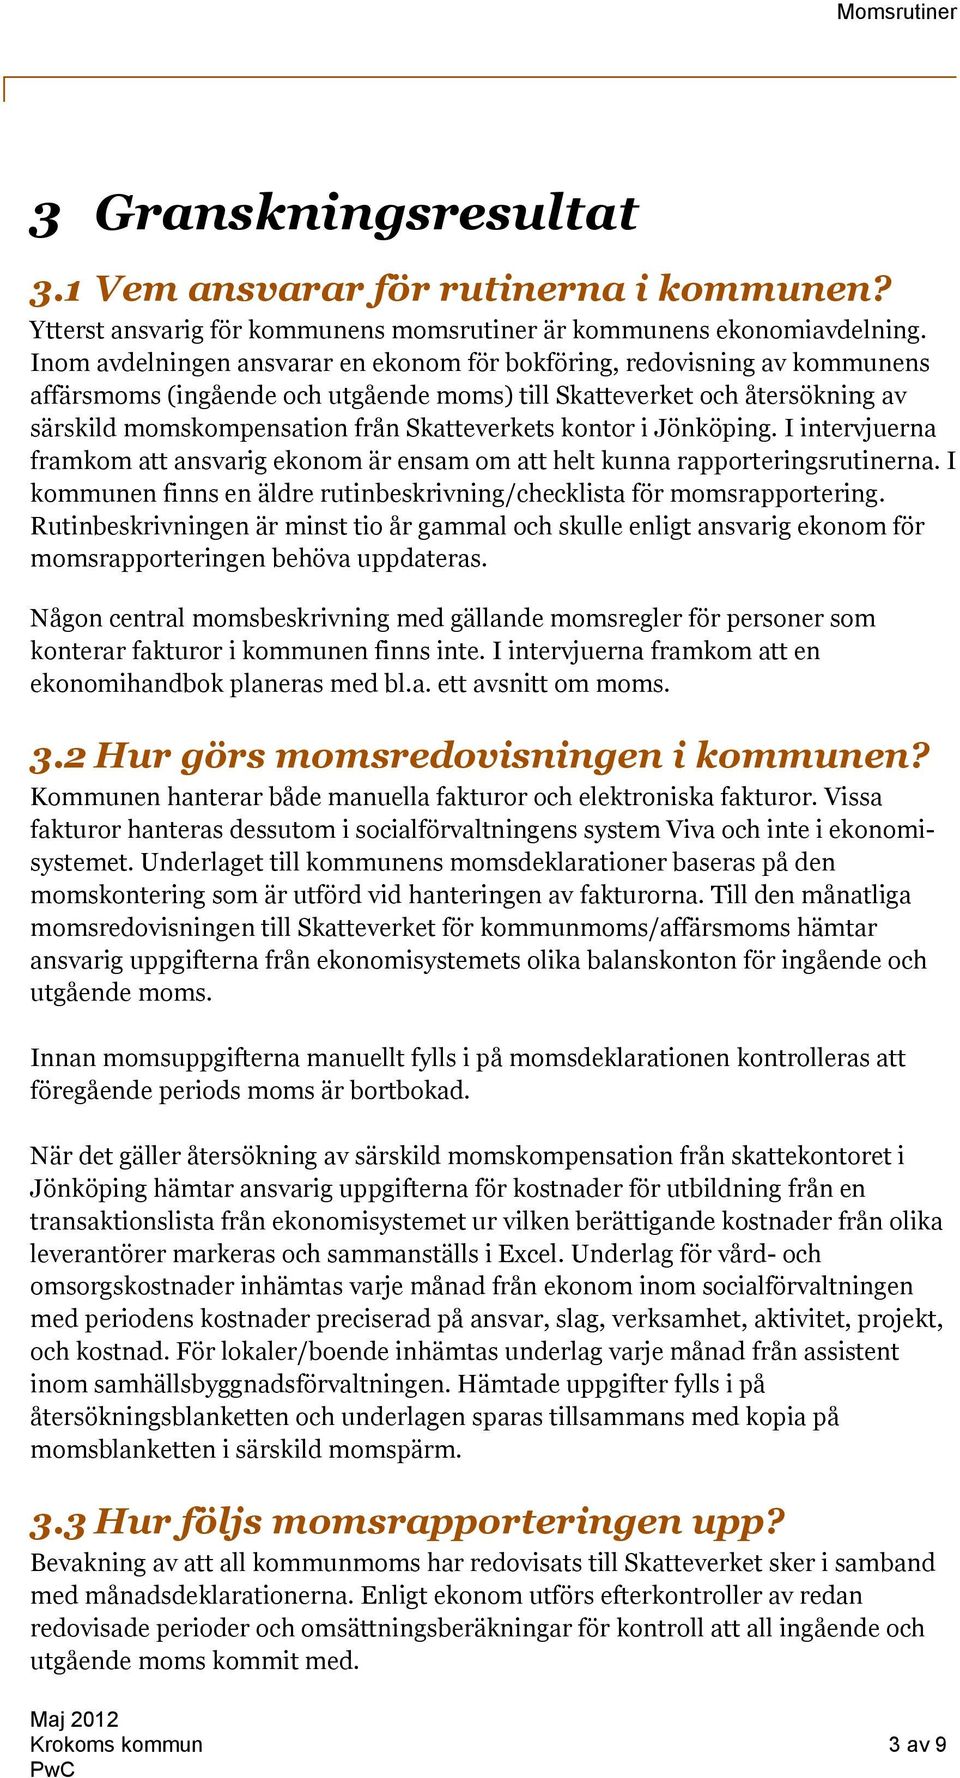 kontor i Jönköping. I intervjuerna framkom att ansvarig ekonom är ensam om att helt kunna rapporteringsrutinerna. I kommunen finns en äldre rutinbeskrivning/checklista för momsrapportering.